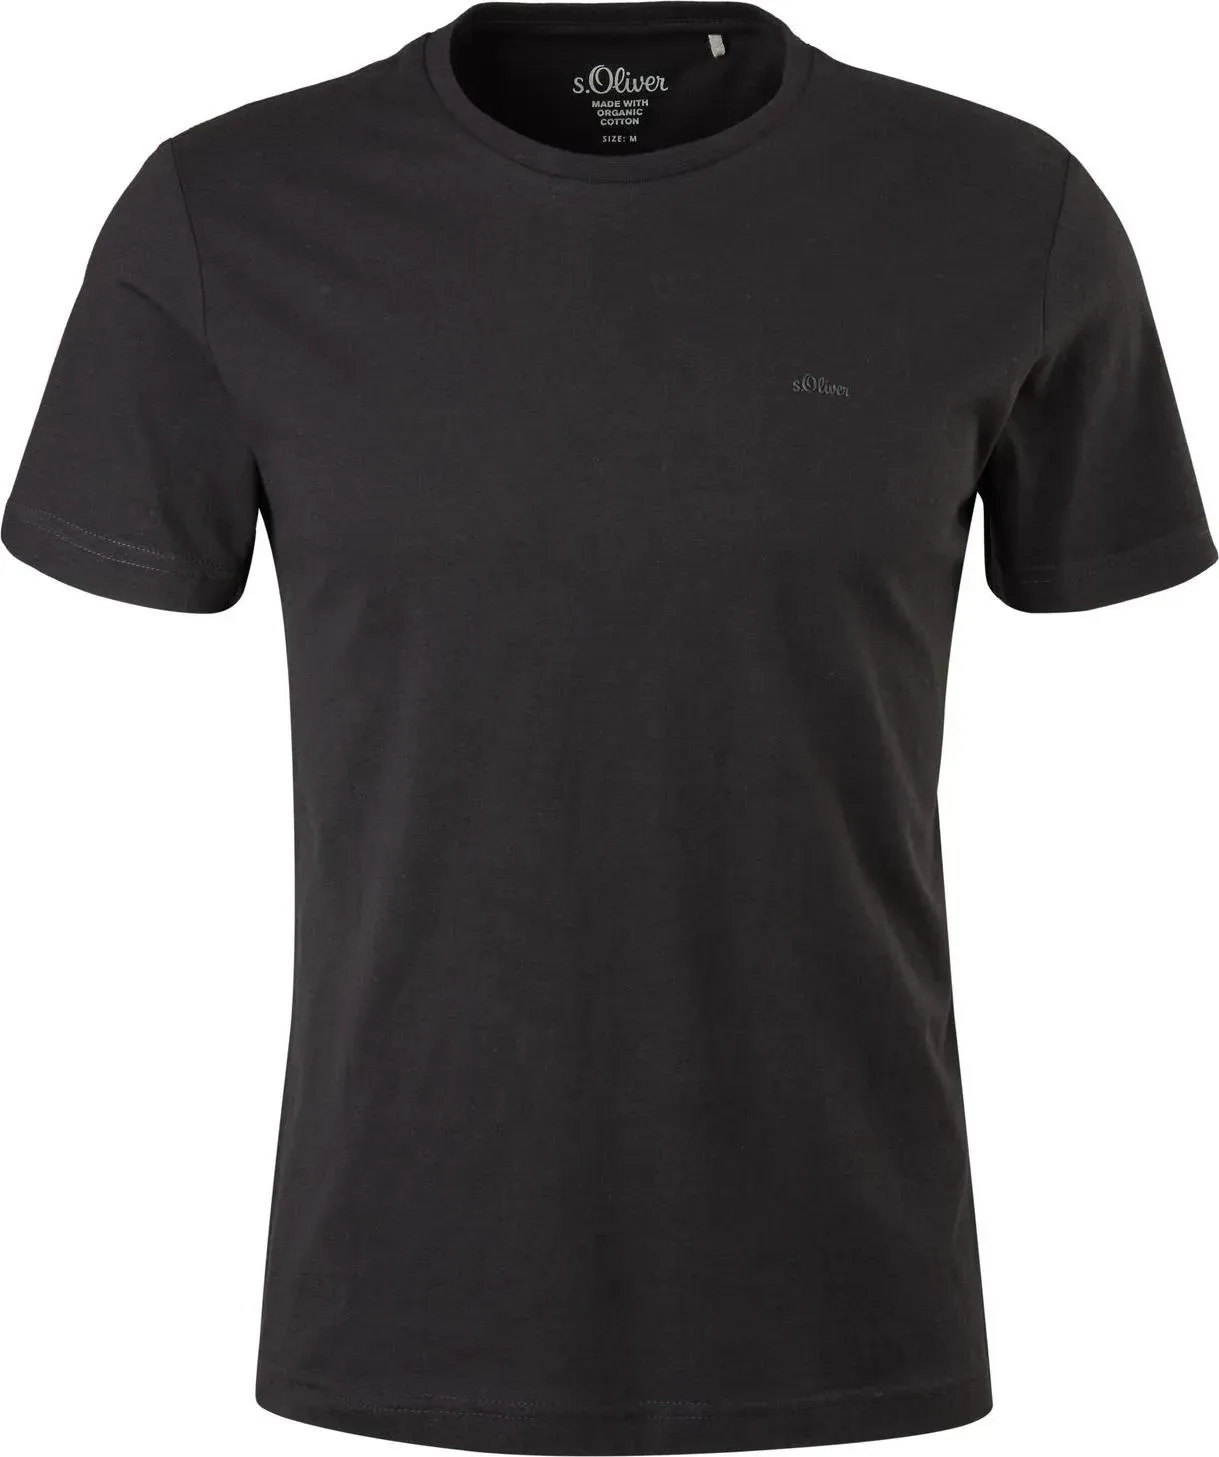 S.Oliver, Herren, Shirt, Herren T-Shirts Baumwolle Rundhals Ausschnitt Logo modern 2 Stück, Schwarz, (L)